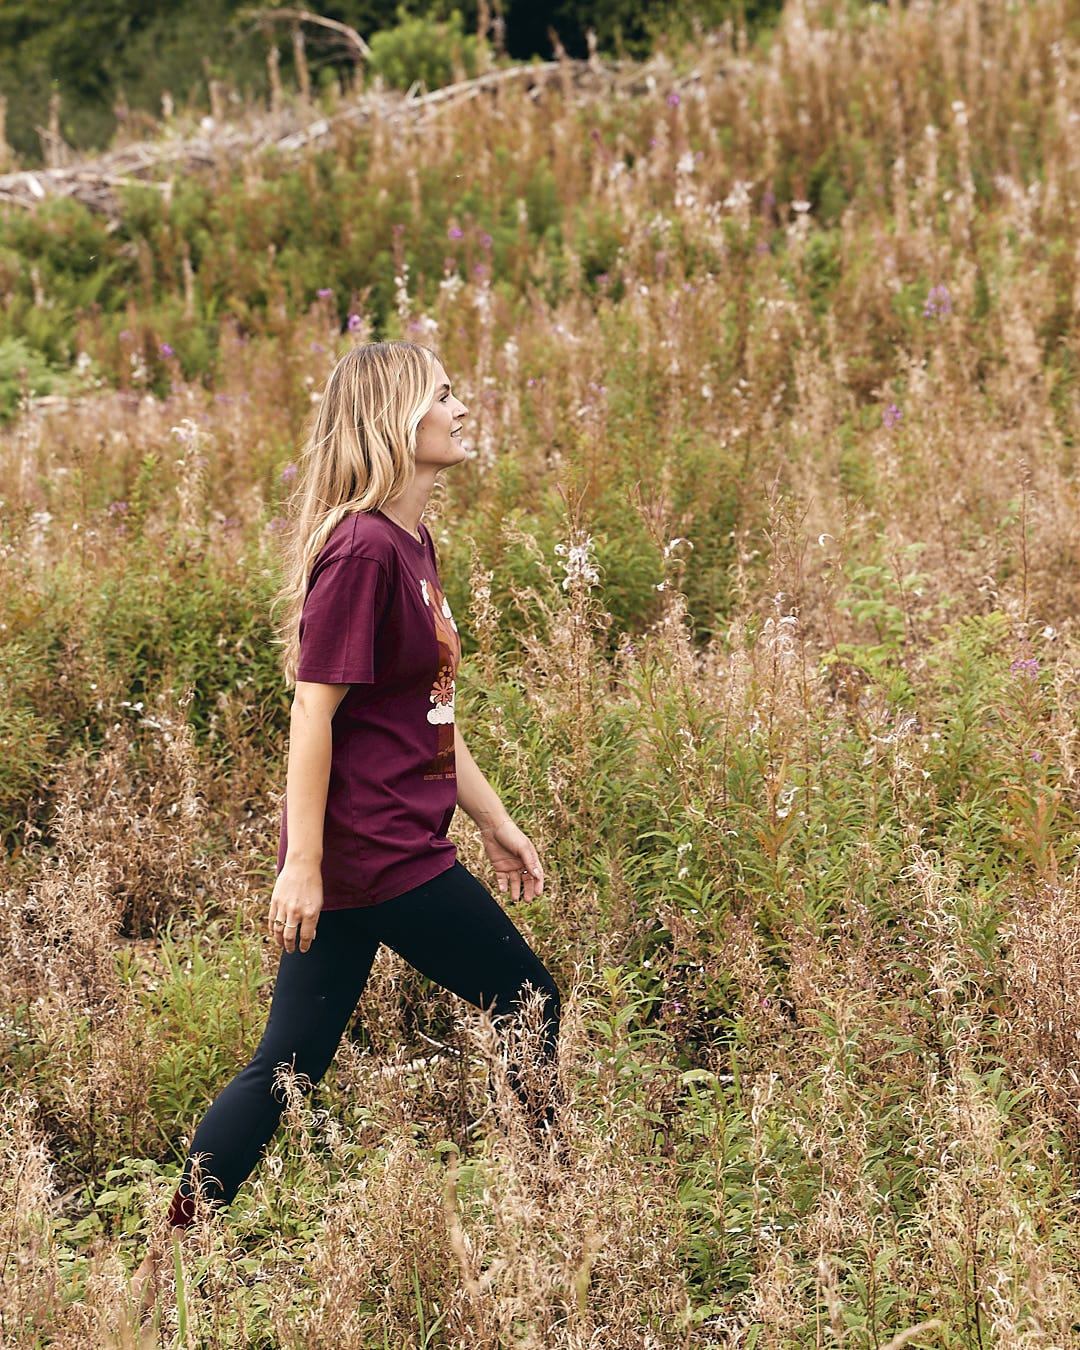 A woman walking through a field with an Adventure Awaits - Womens Short Sleeve T-Shirt - Dark Purple by Saltrock.